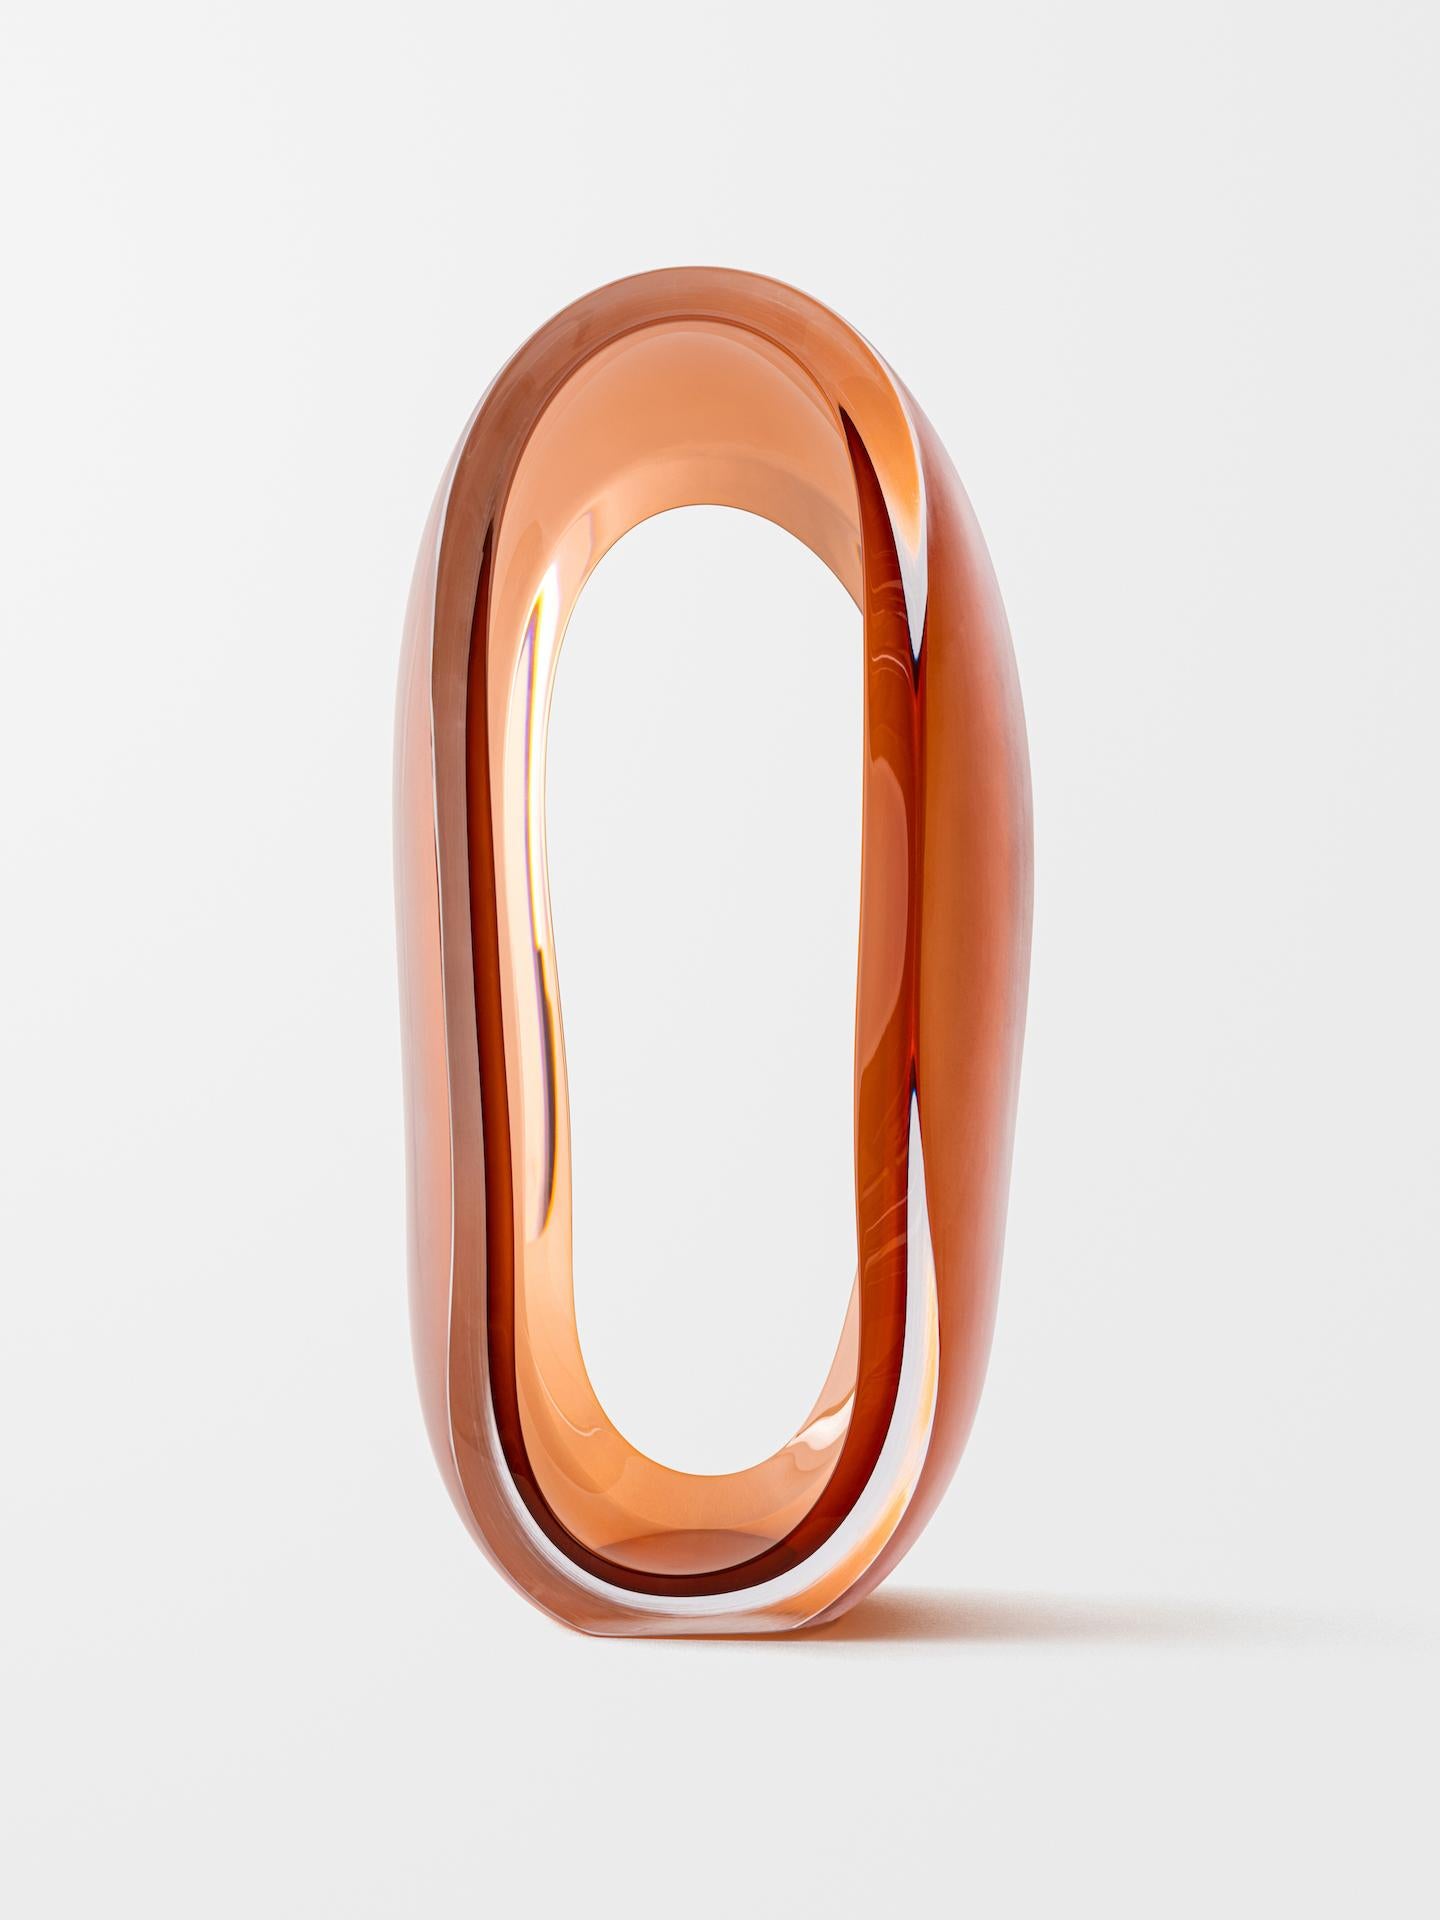 Loops (Orange) - Sculpture by Jonas Noël Niedermann